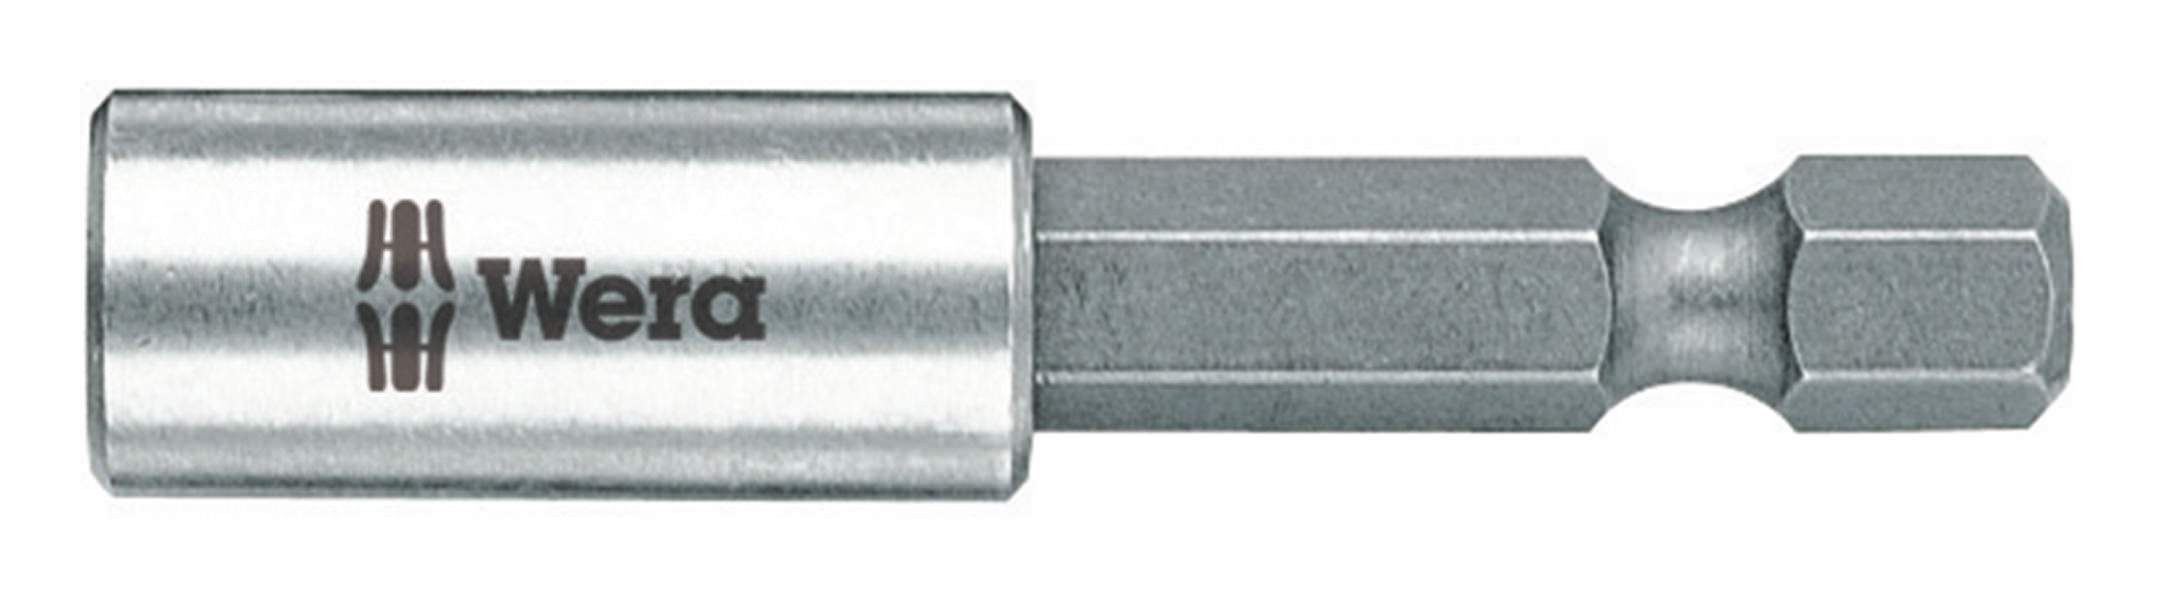 Wera Bithalter, Universalhalter mit Magnet 893 / 4 / 1K 50 mm